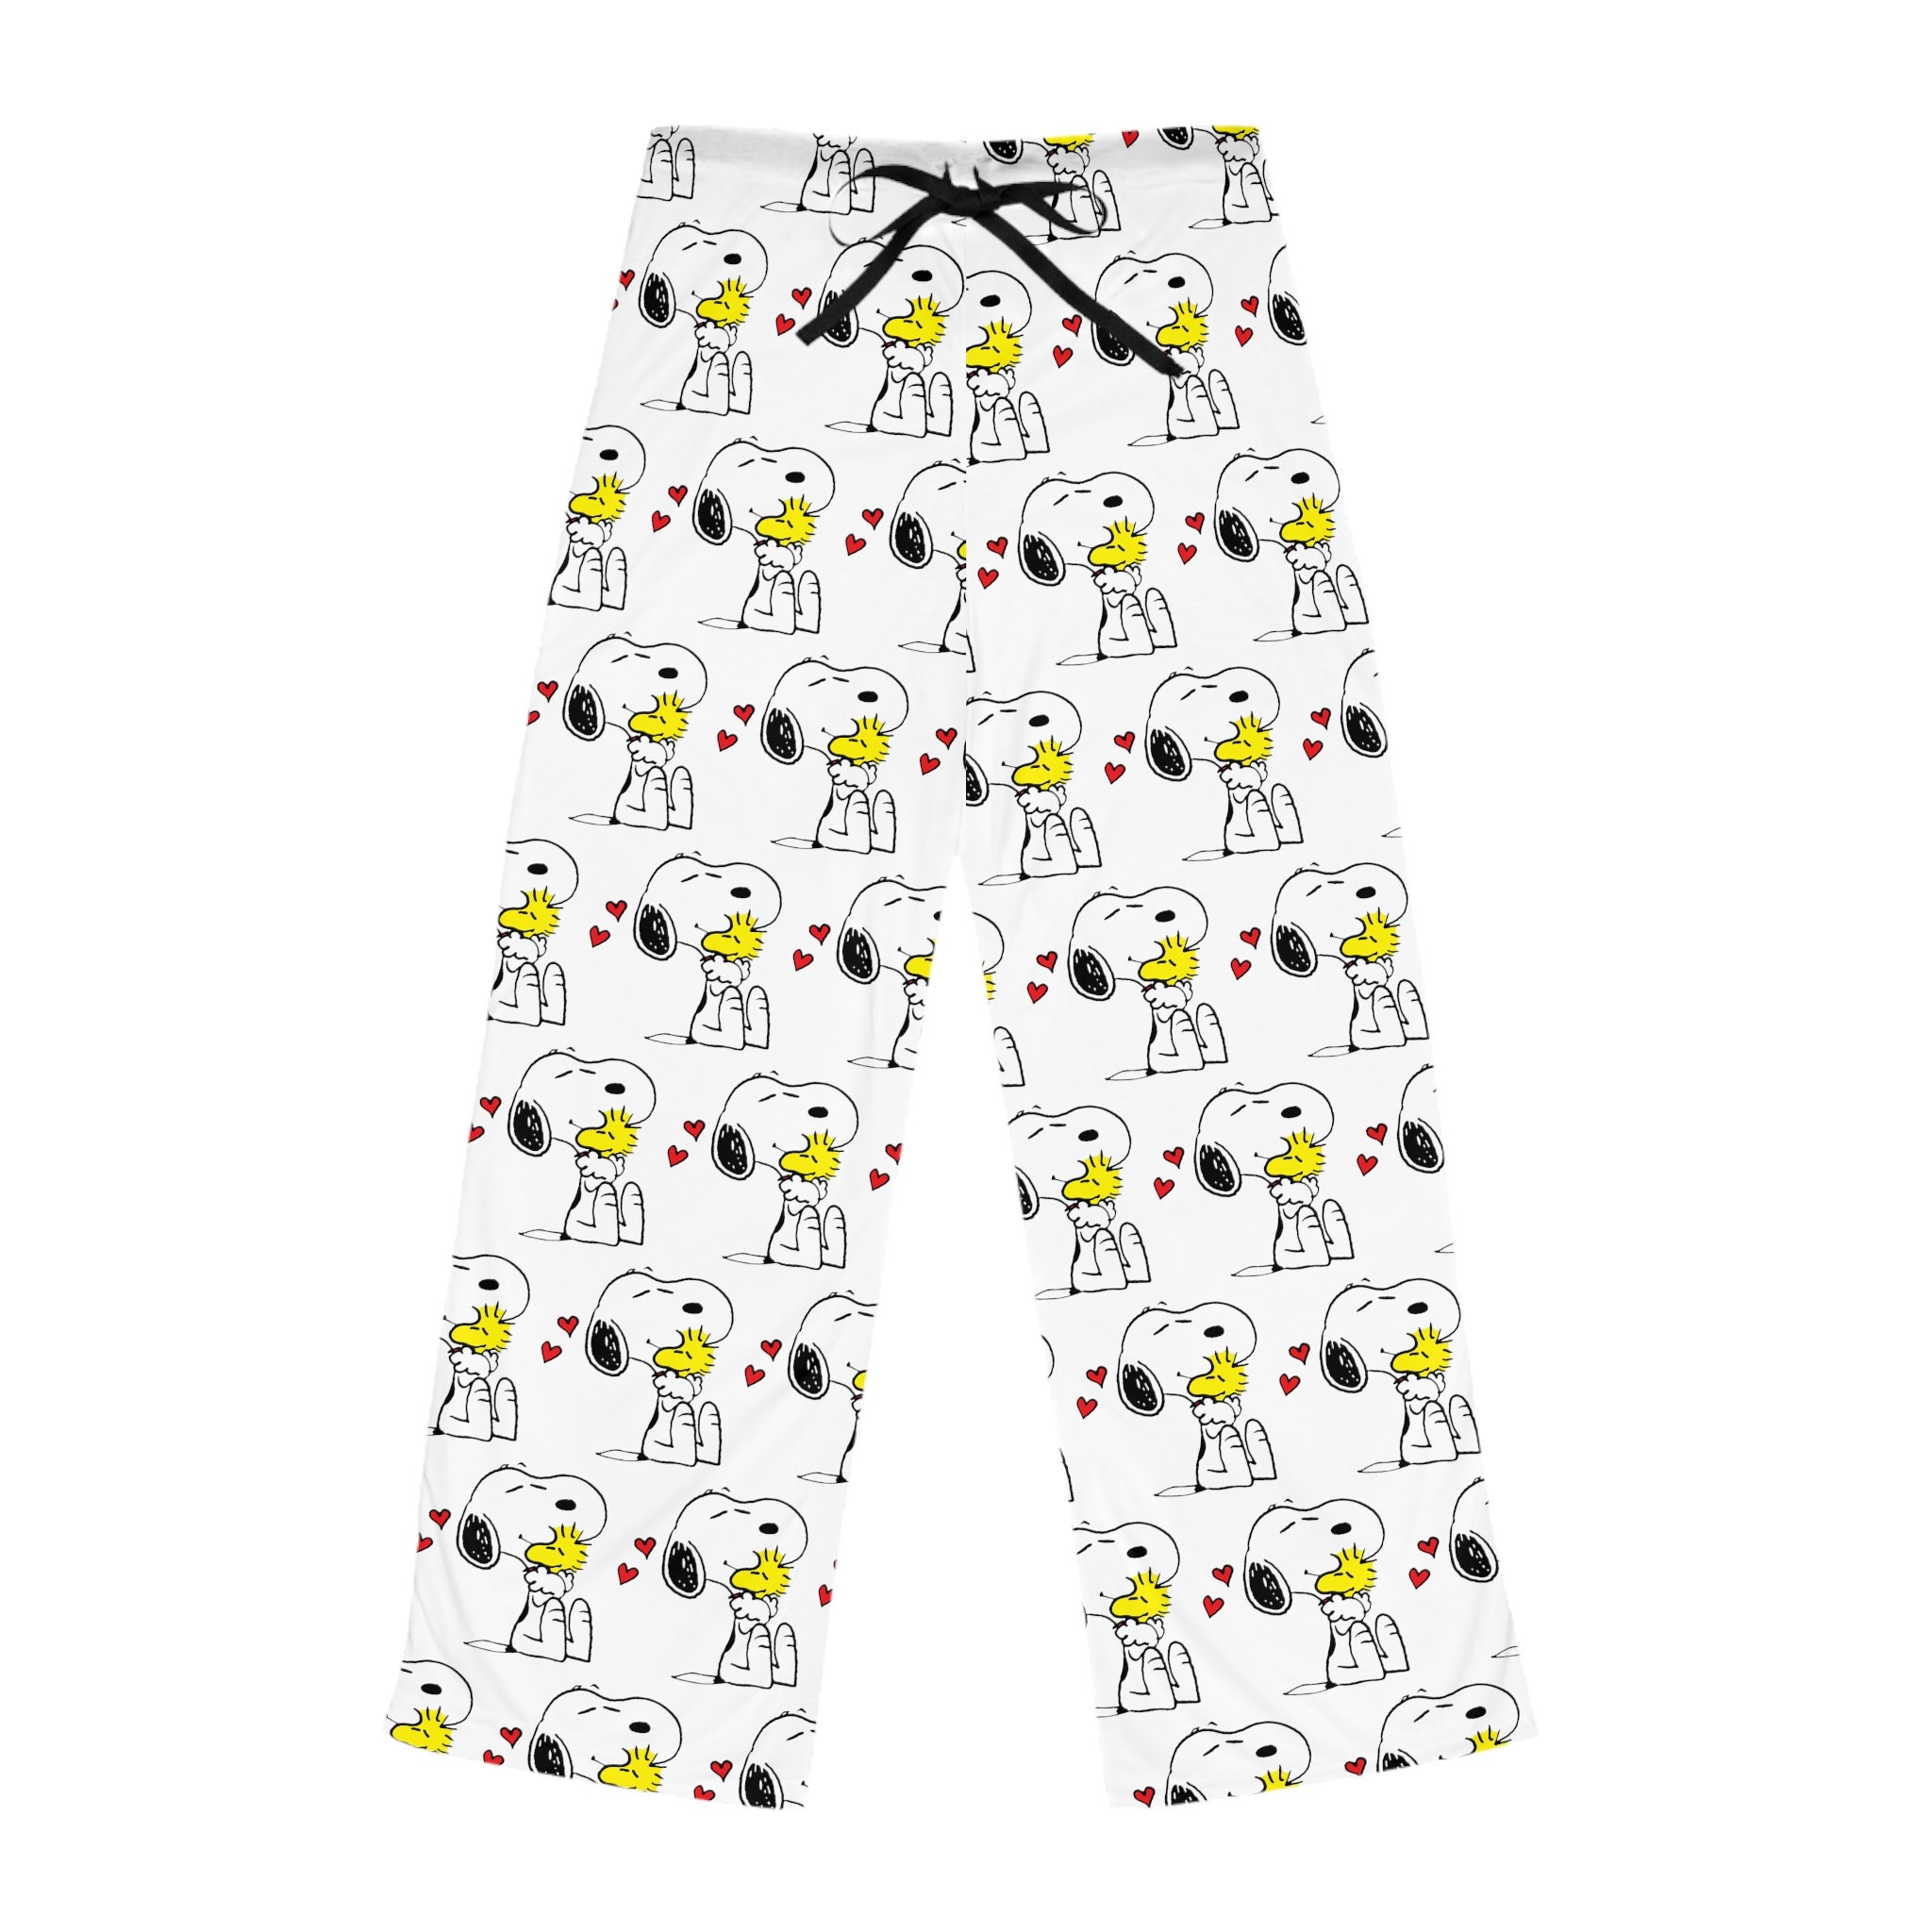 Snoopy Pajamas -  Canada